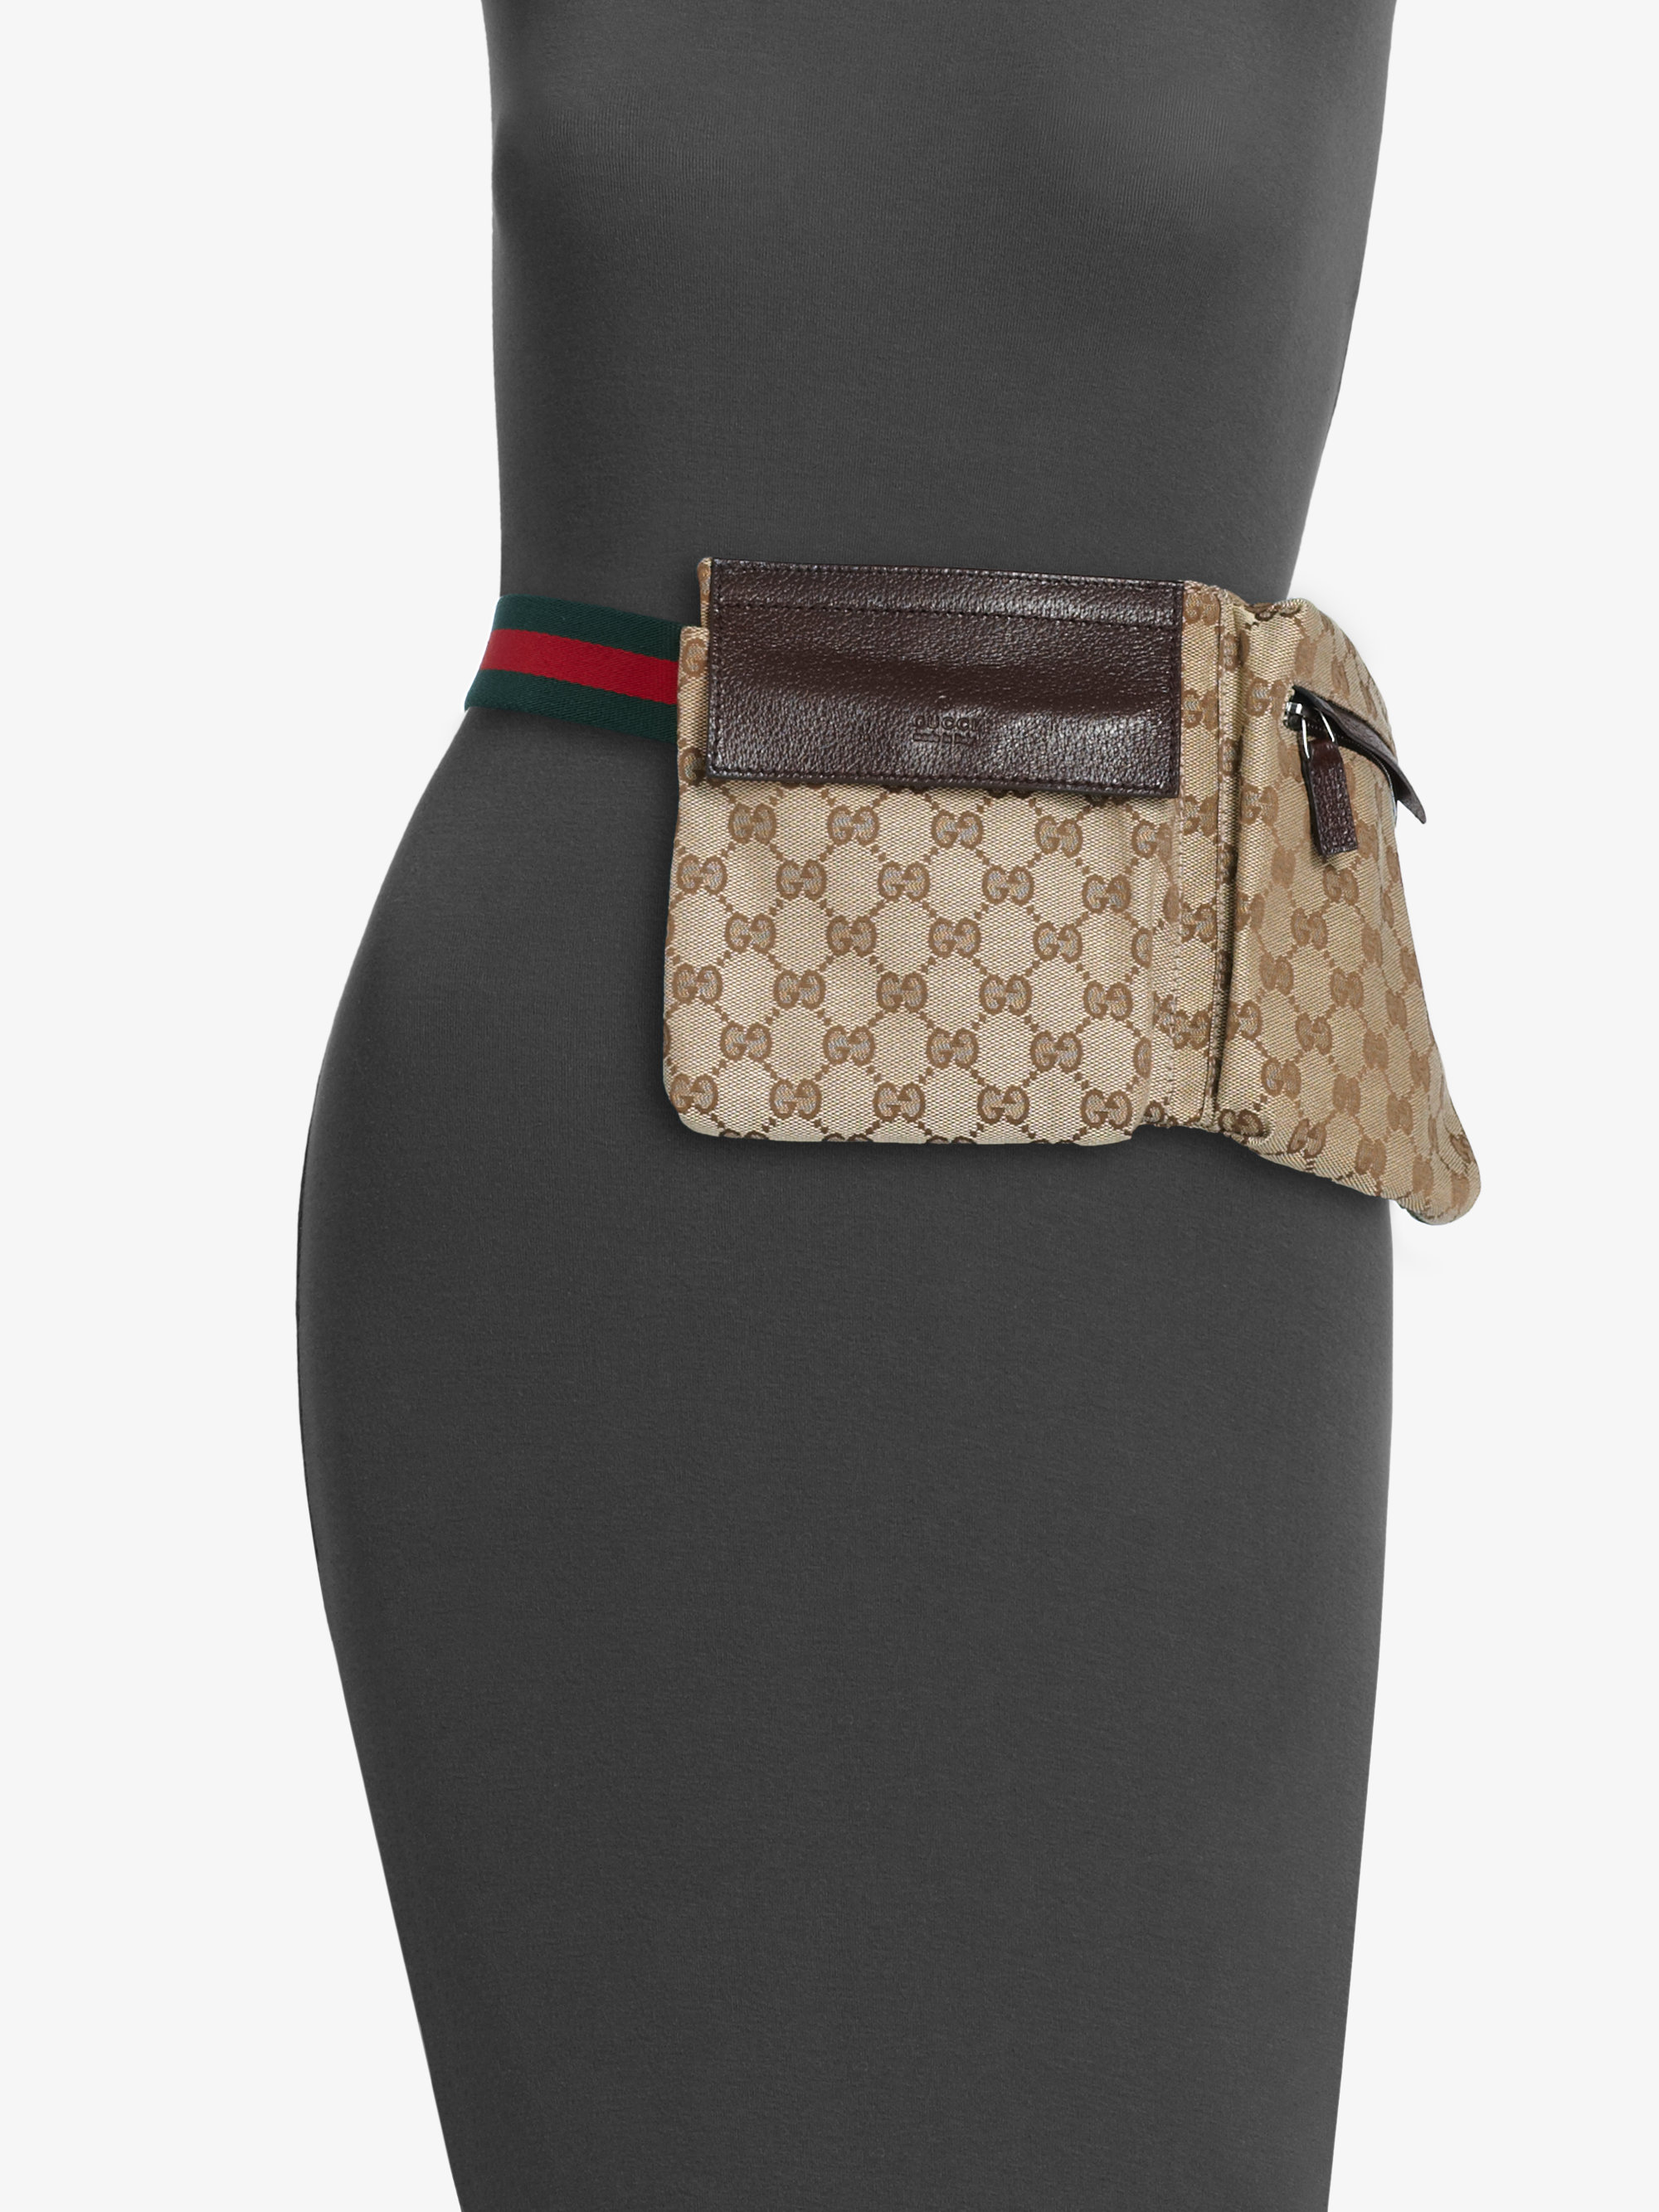 Gucci Original Gg Canvas Belt Bag in Beige (Natural) - Lyst